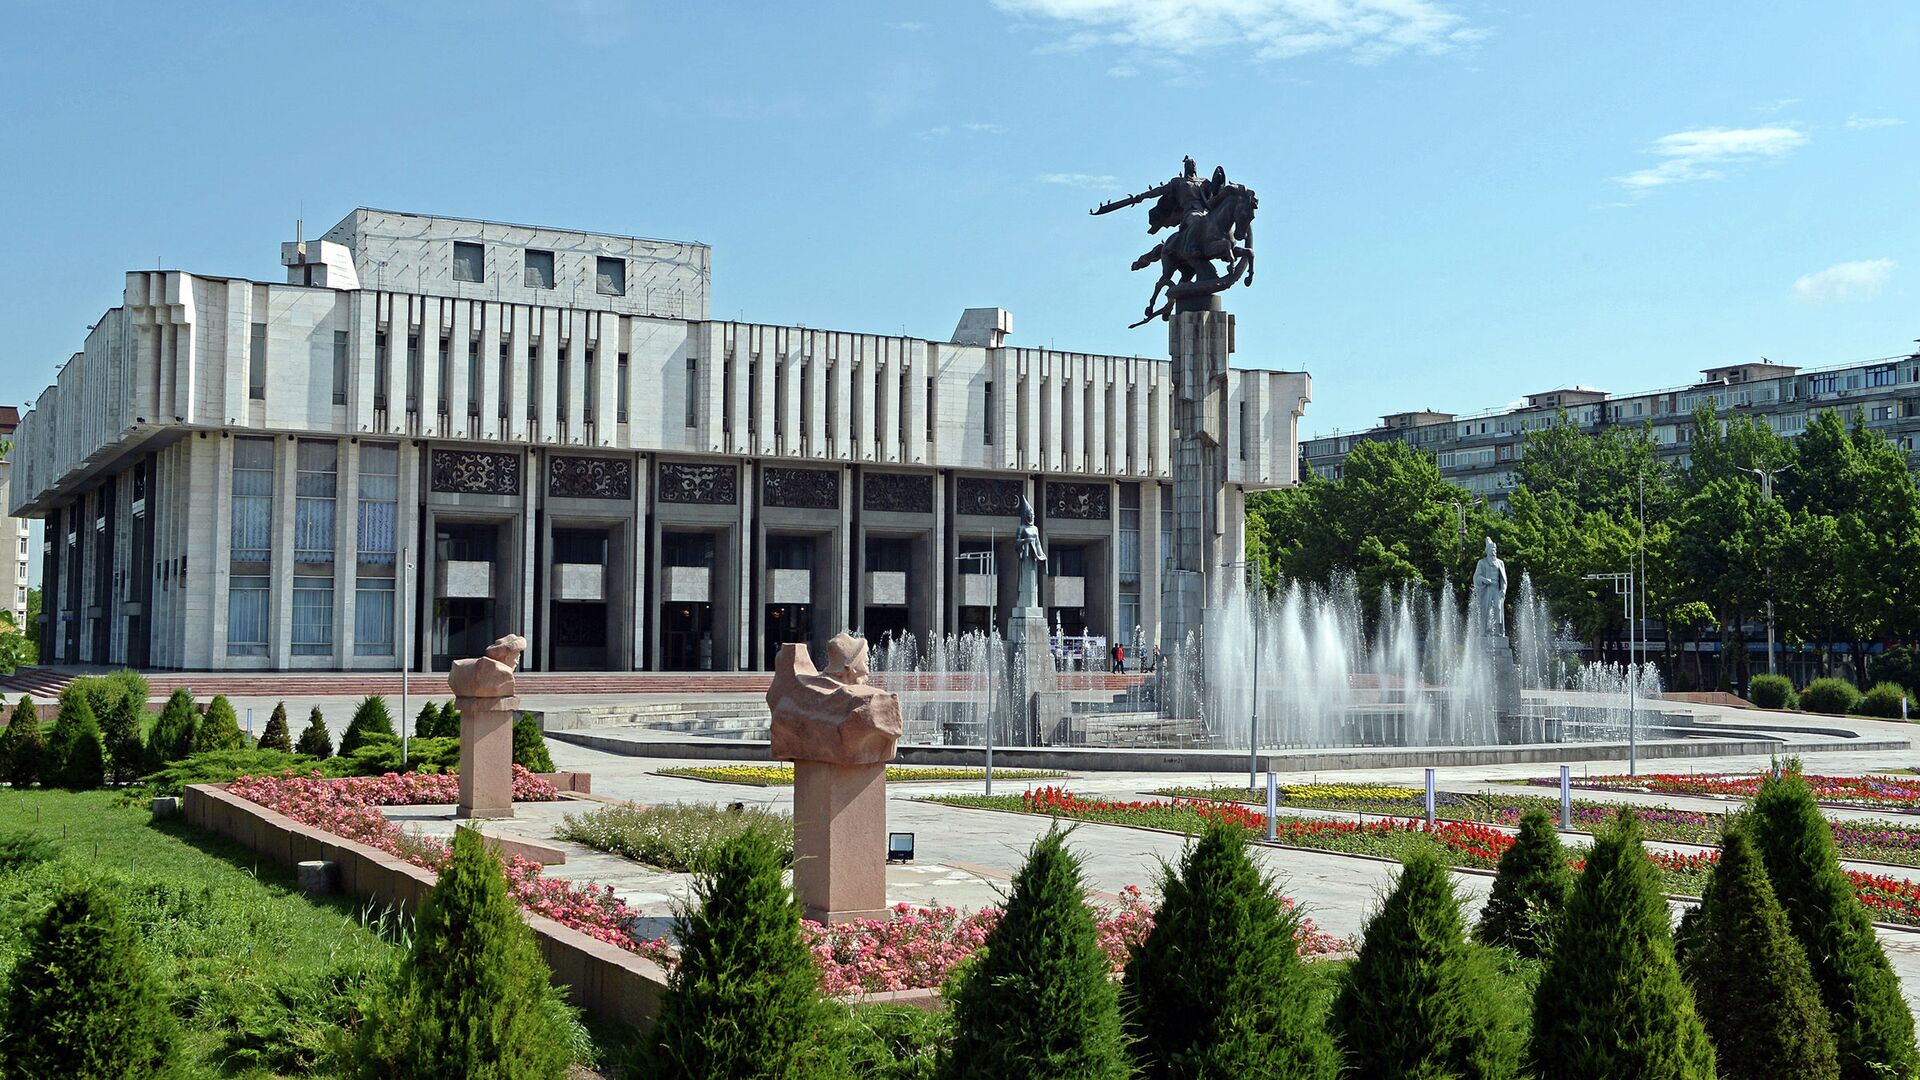 Кыргызстан Бишкек достопримечательности